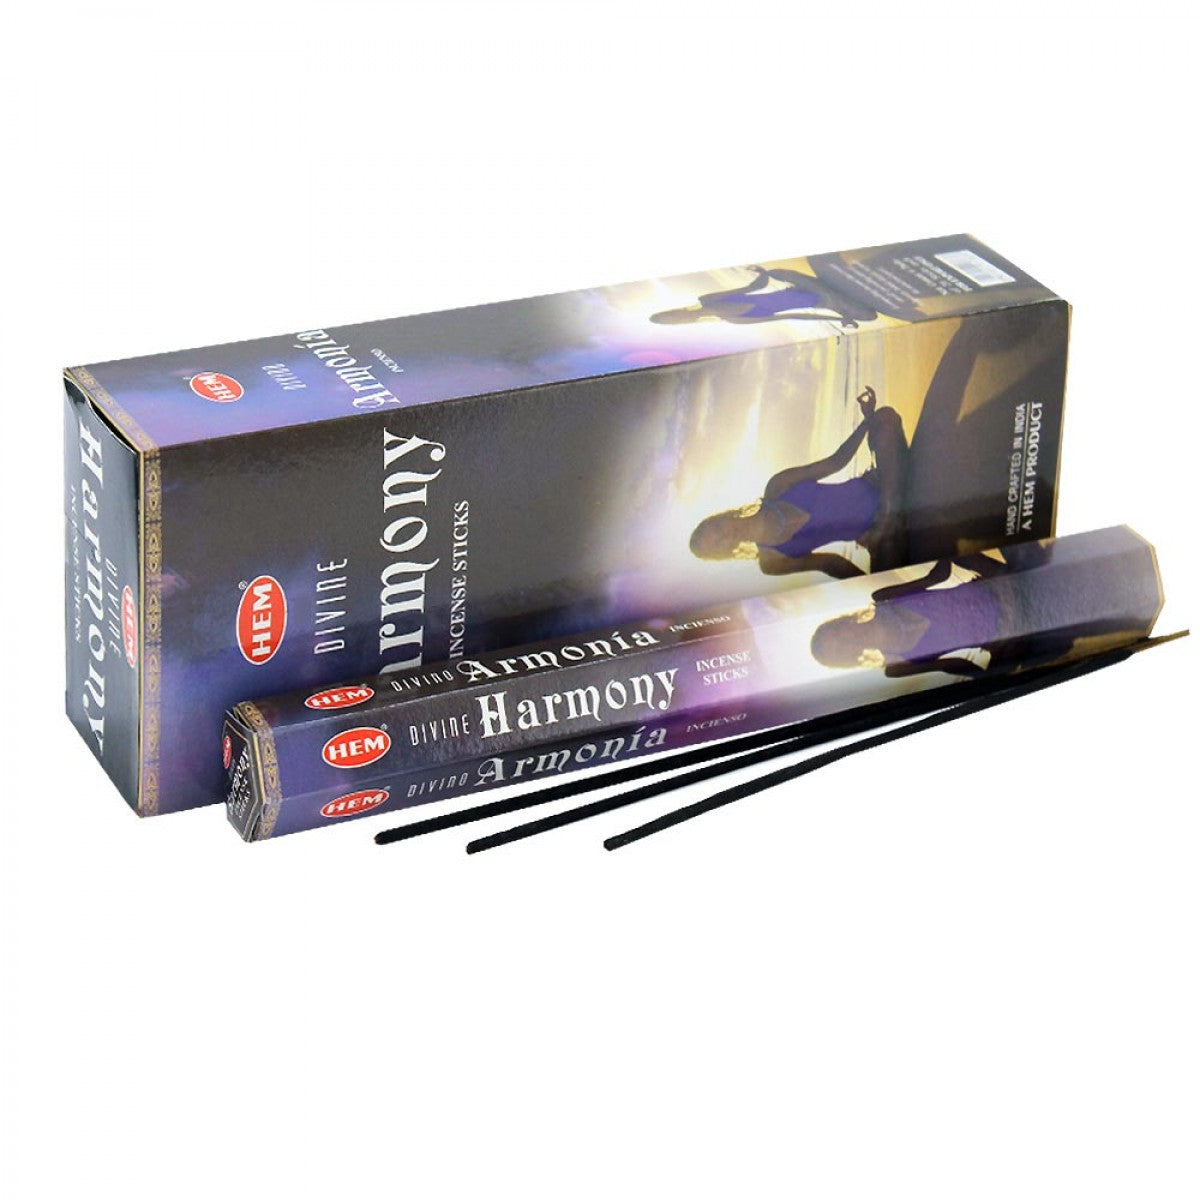 HEM Divine Harmony Incense Sticks - 120 Sticks